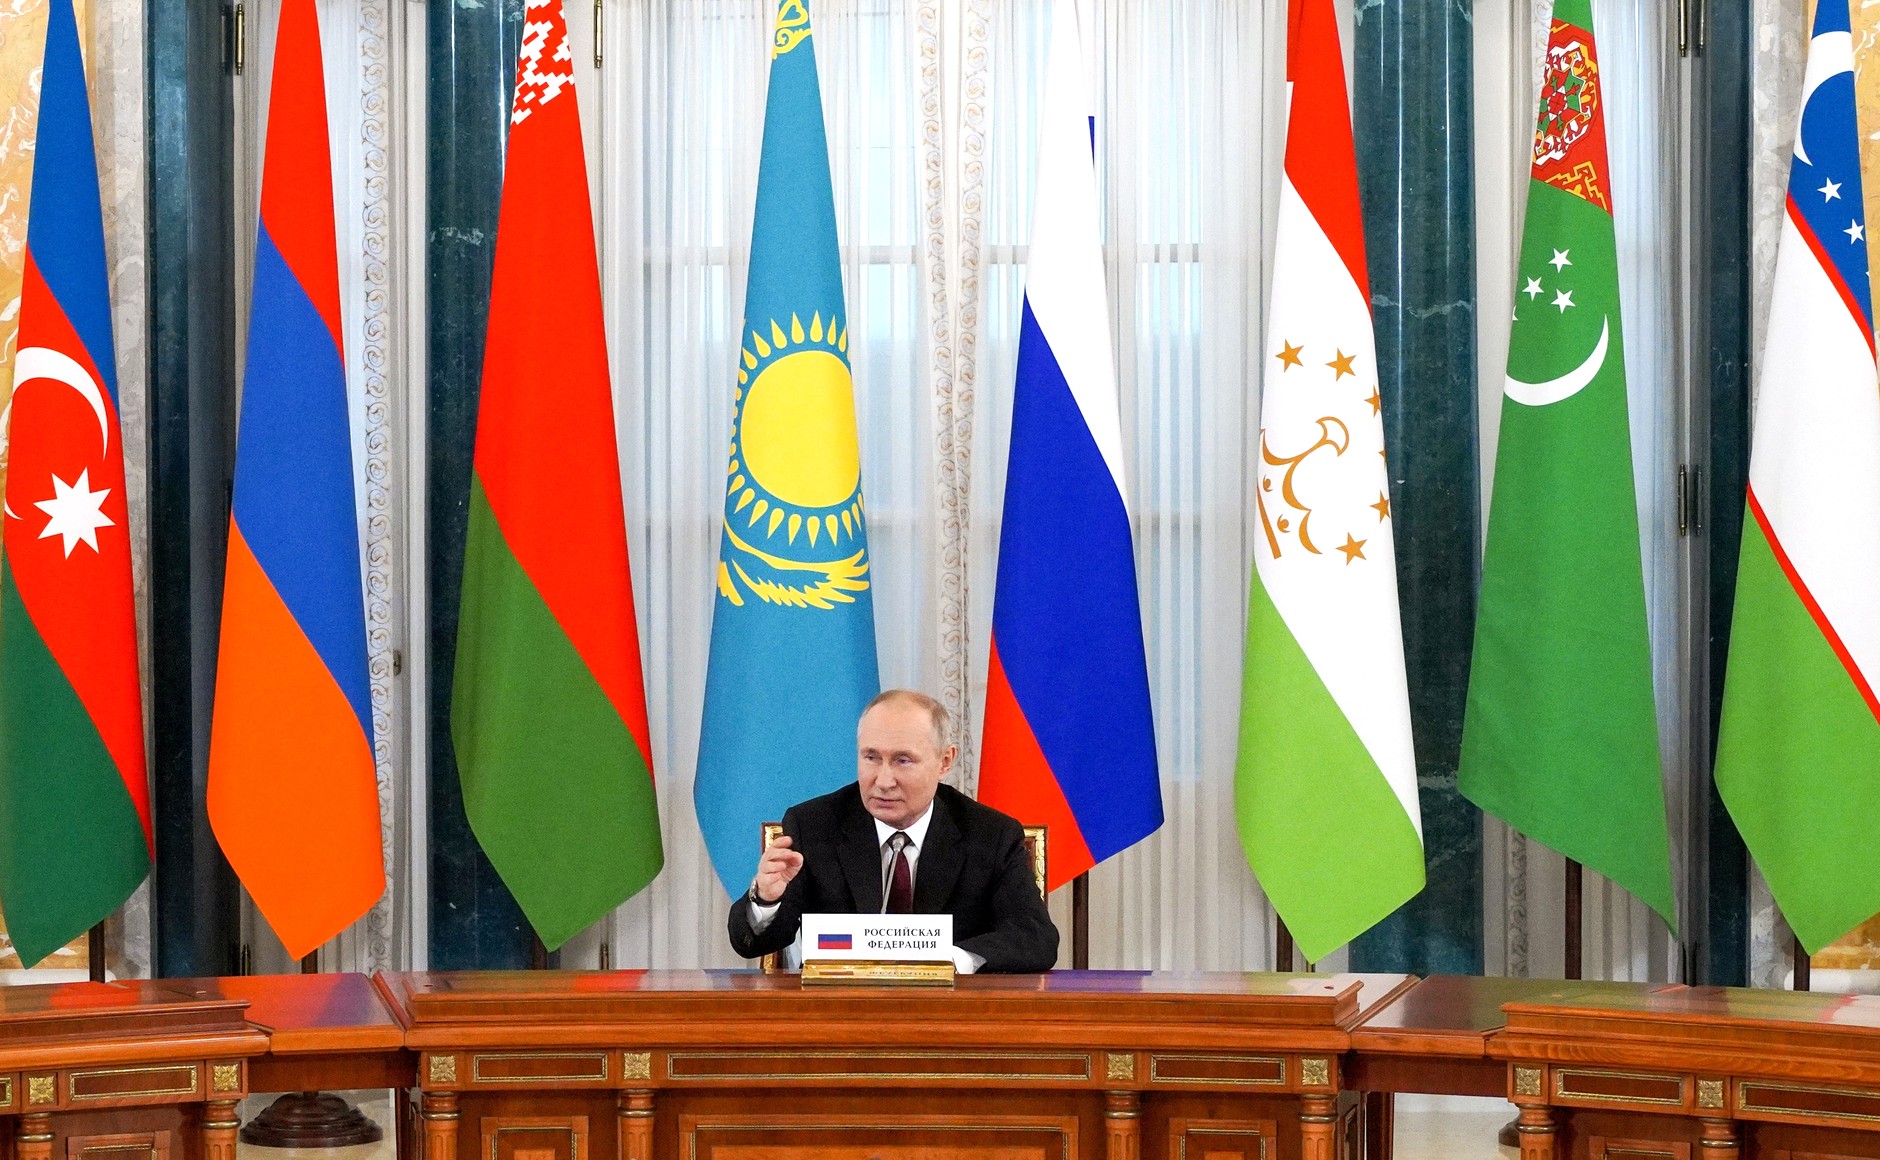 Путин заявил о необходимости выработки мер по разрешению конфликтов на пространстве СНГ